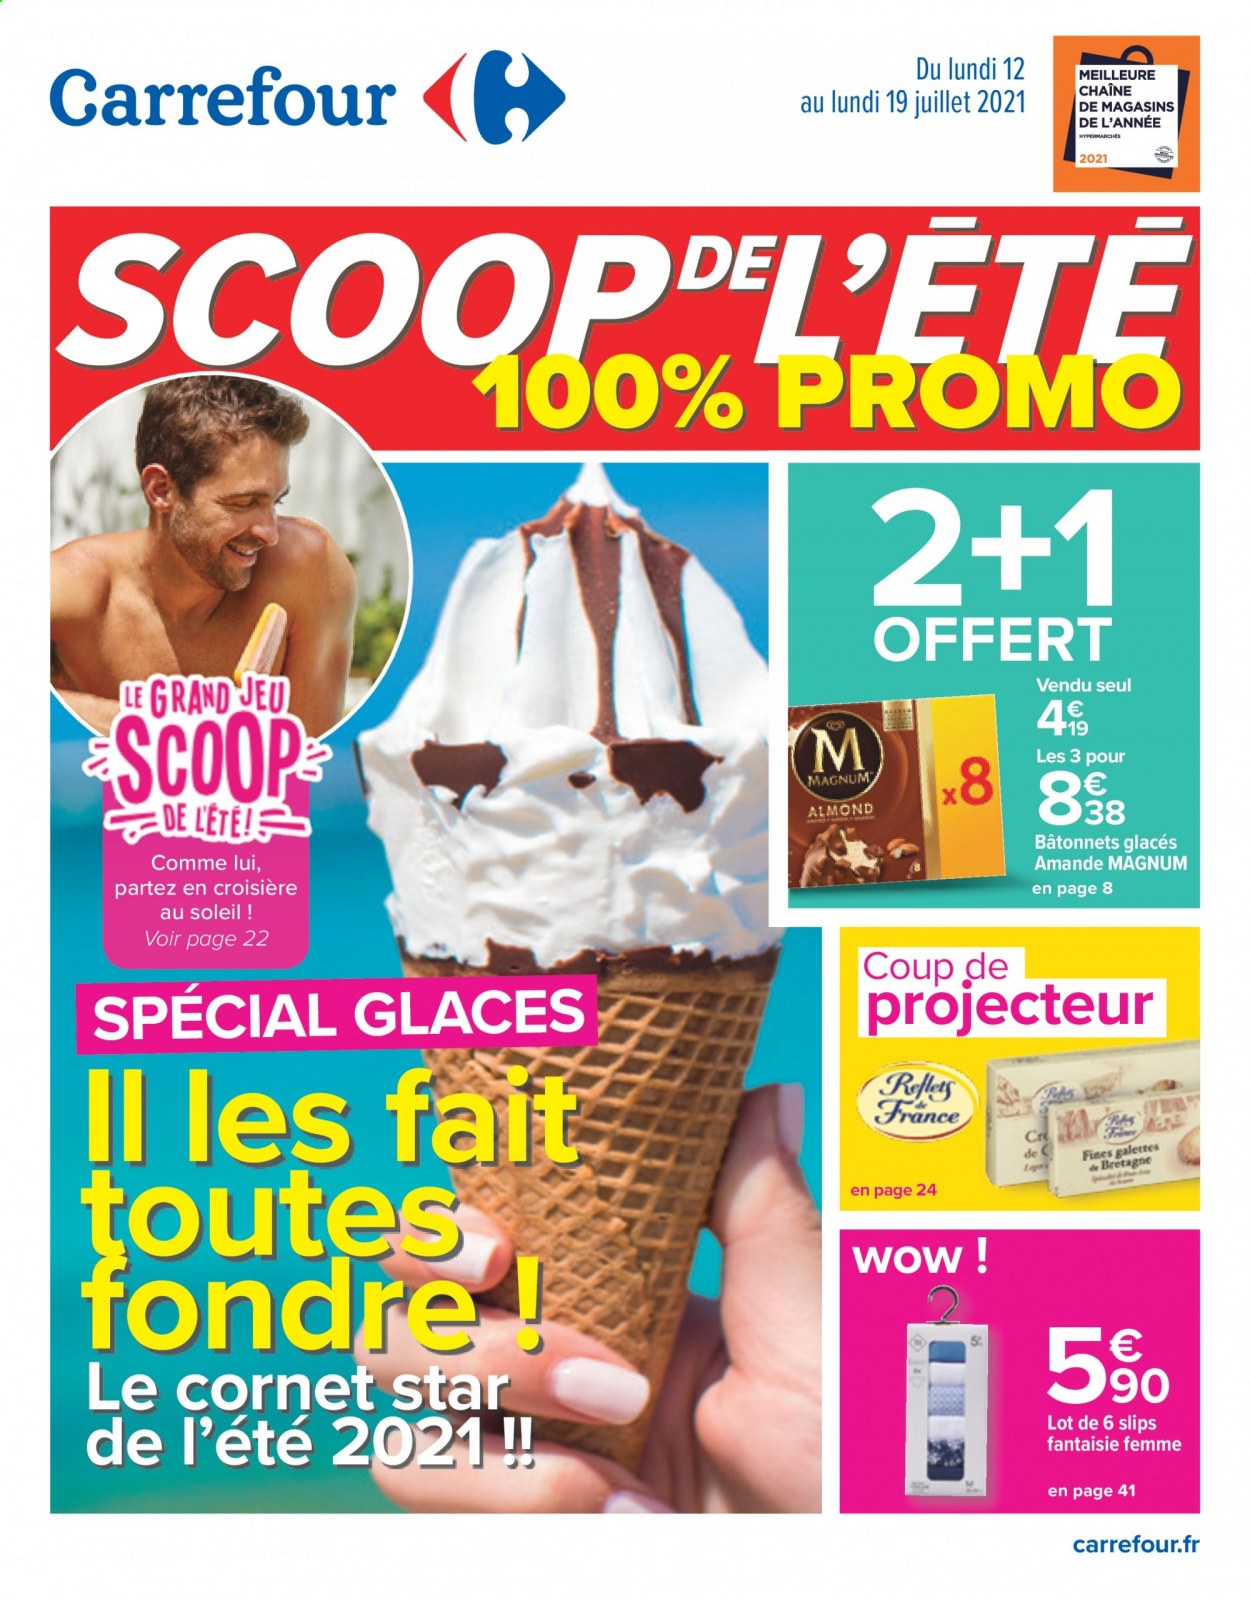 thumbnail - Catalogue Carrefour Hypermarchés - 12/07/2021 - 19/07/2021 - Produits soldés - jeu, galettes, Magnum, projecteur, slip. Page 1.